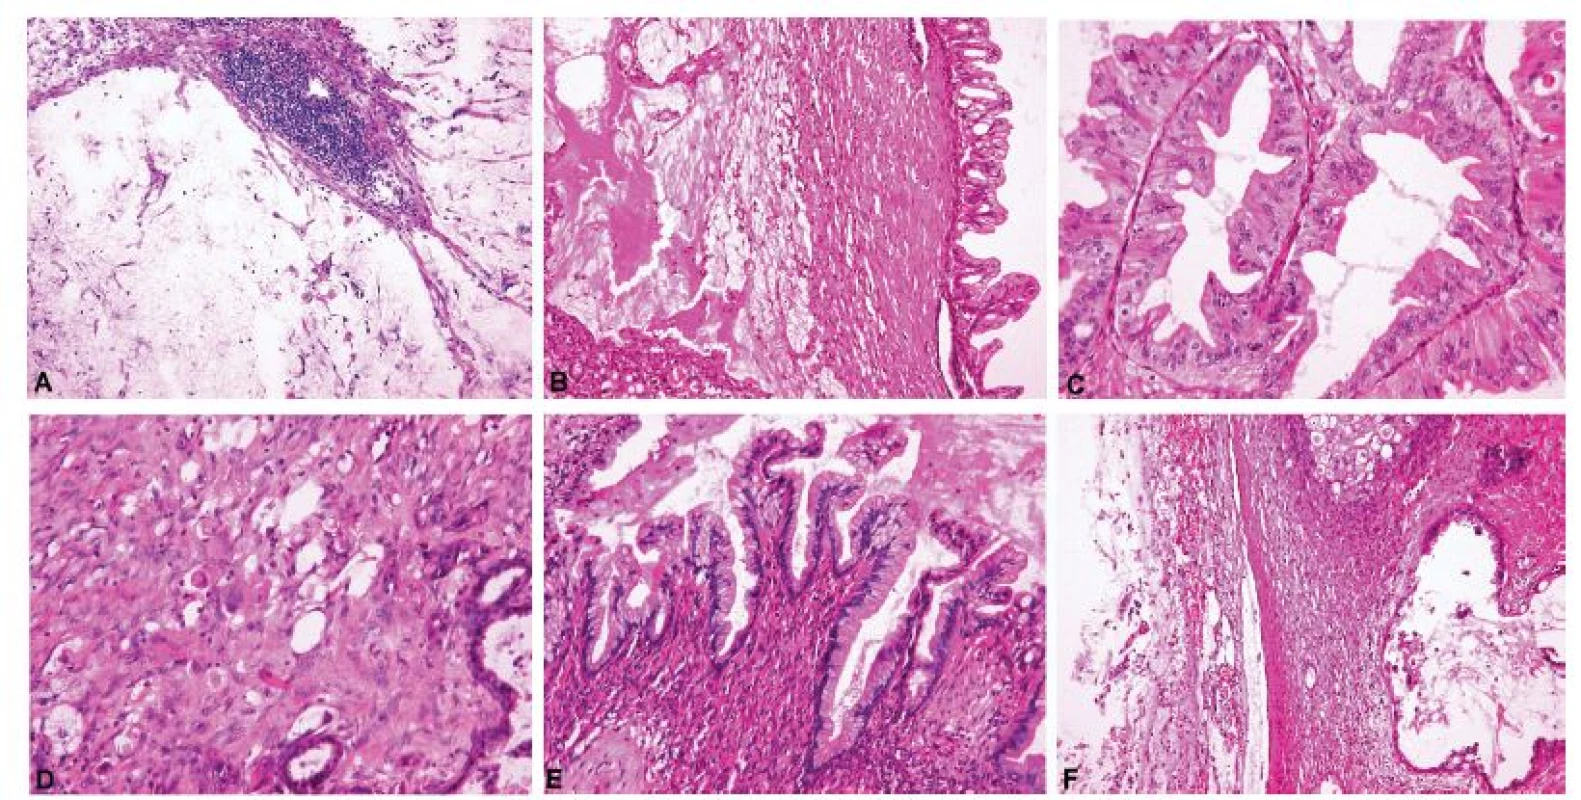 Metastatický adenokarcinom pankreatu demonstrující znaky typické pro metastázy mucinózních adenokarcinomů do ovaria.<br>
A – acelulární stromální jezírka hlenu v ovariu (pseudomyxoma ovarii), shodný nález ve dvou peroperačně vyšetřených tkáňových blocích (peroperačně hlášeno
jako diseminace extraovariálního mucinózního nádoru) (peroperační vyšetření, HE, 100x); B – acelulární stromální jezírka hlenu v blízkosti nádorového
proliferujího mucinózního epitelu (definitivní vyšetření, HE, 100x); C – cystopapilární komponenta nádoru mimikující mucinózní borderline nádor ovaria (paradoxní
maturace) (definitivní vyšetření, HE, 200x); D – disociace nádorových buněk do stromatu (definitivní vyšetření, HE, 200x); E – cystopapilární komponenta
nádoru mimikující mucinózní cystadenom ovaria (paradoxní maturace) (definitivní vyšetření, HE, 200x); F – acelulární depozita hlenu na povrchu ovaria (pseudomyxoma
ovarii) (definitivní vyšetření, HE, 100x)